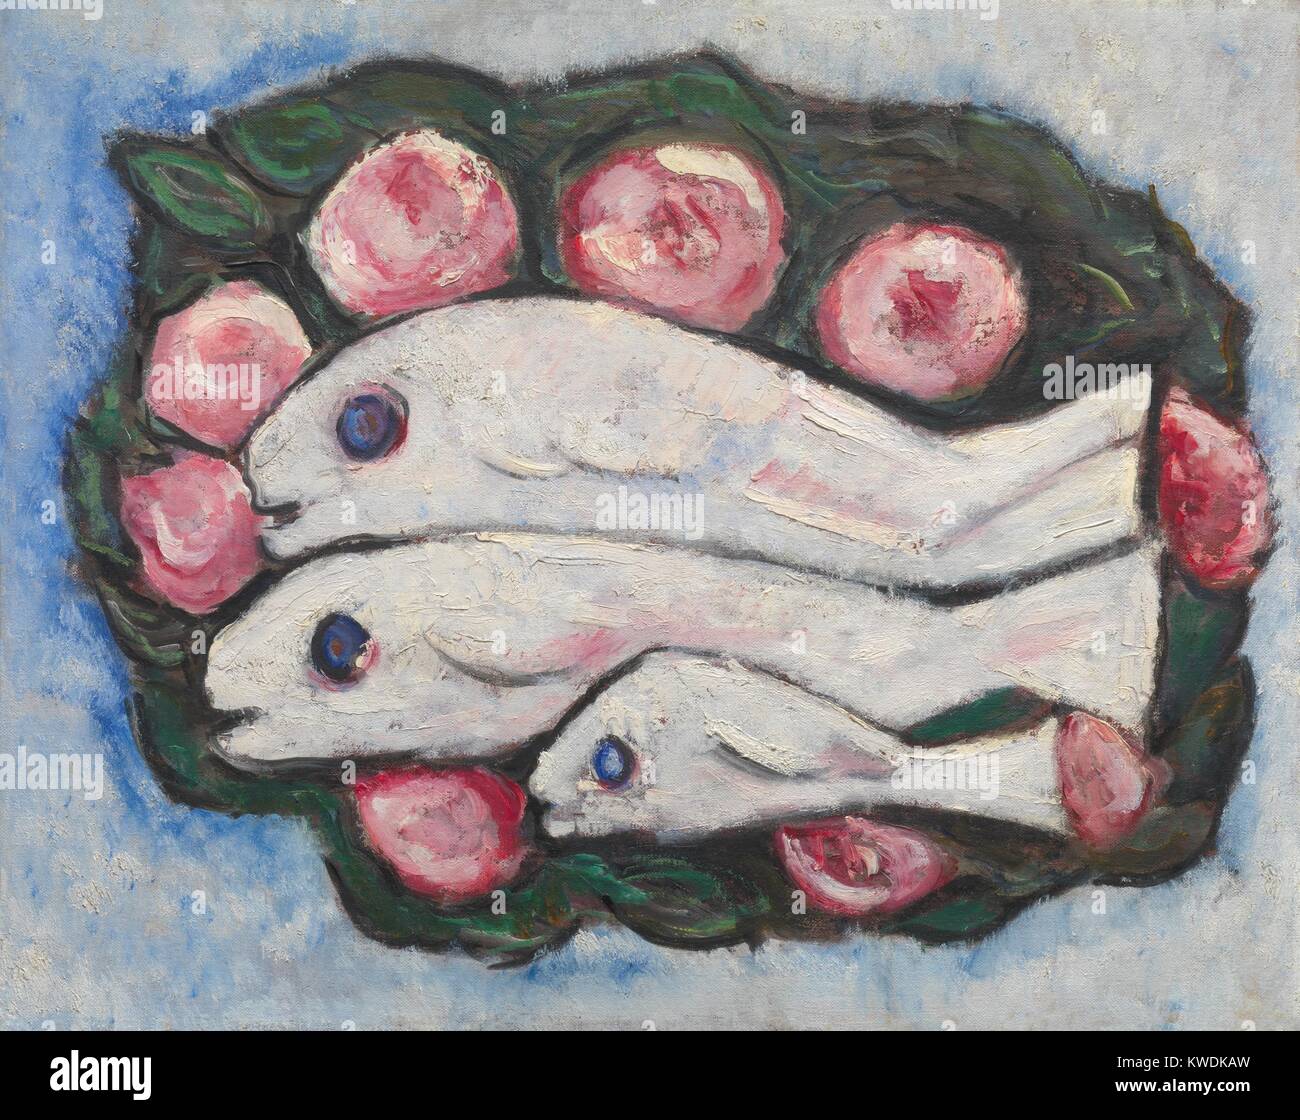 BANQUET EN SILENCE, par Marsden Hartley, 1935-1936, American peinture, huile sur toile. La vie encore d'un plat de poisson peint dans une synthèse personnelle Hartleys du Cubisme et l'Expressionnisme Allemand (BSLOC 2017 7 110) Banque D'Images